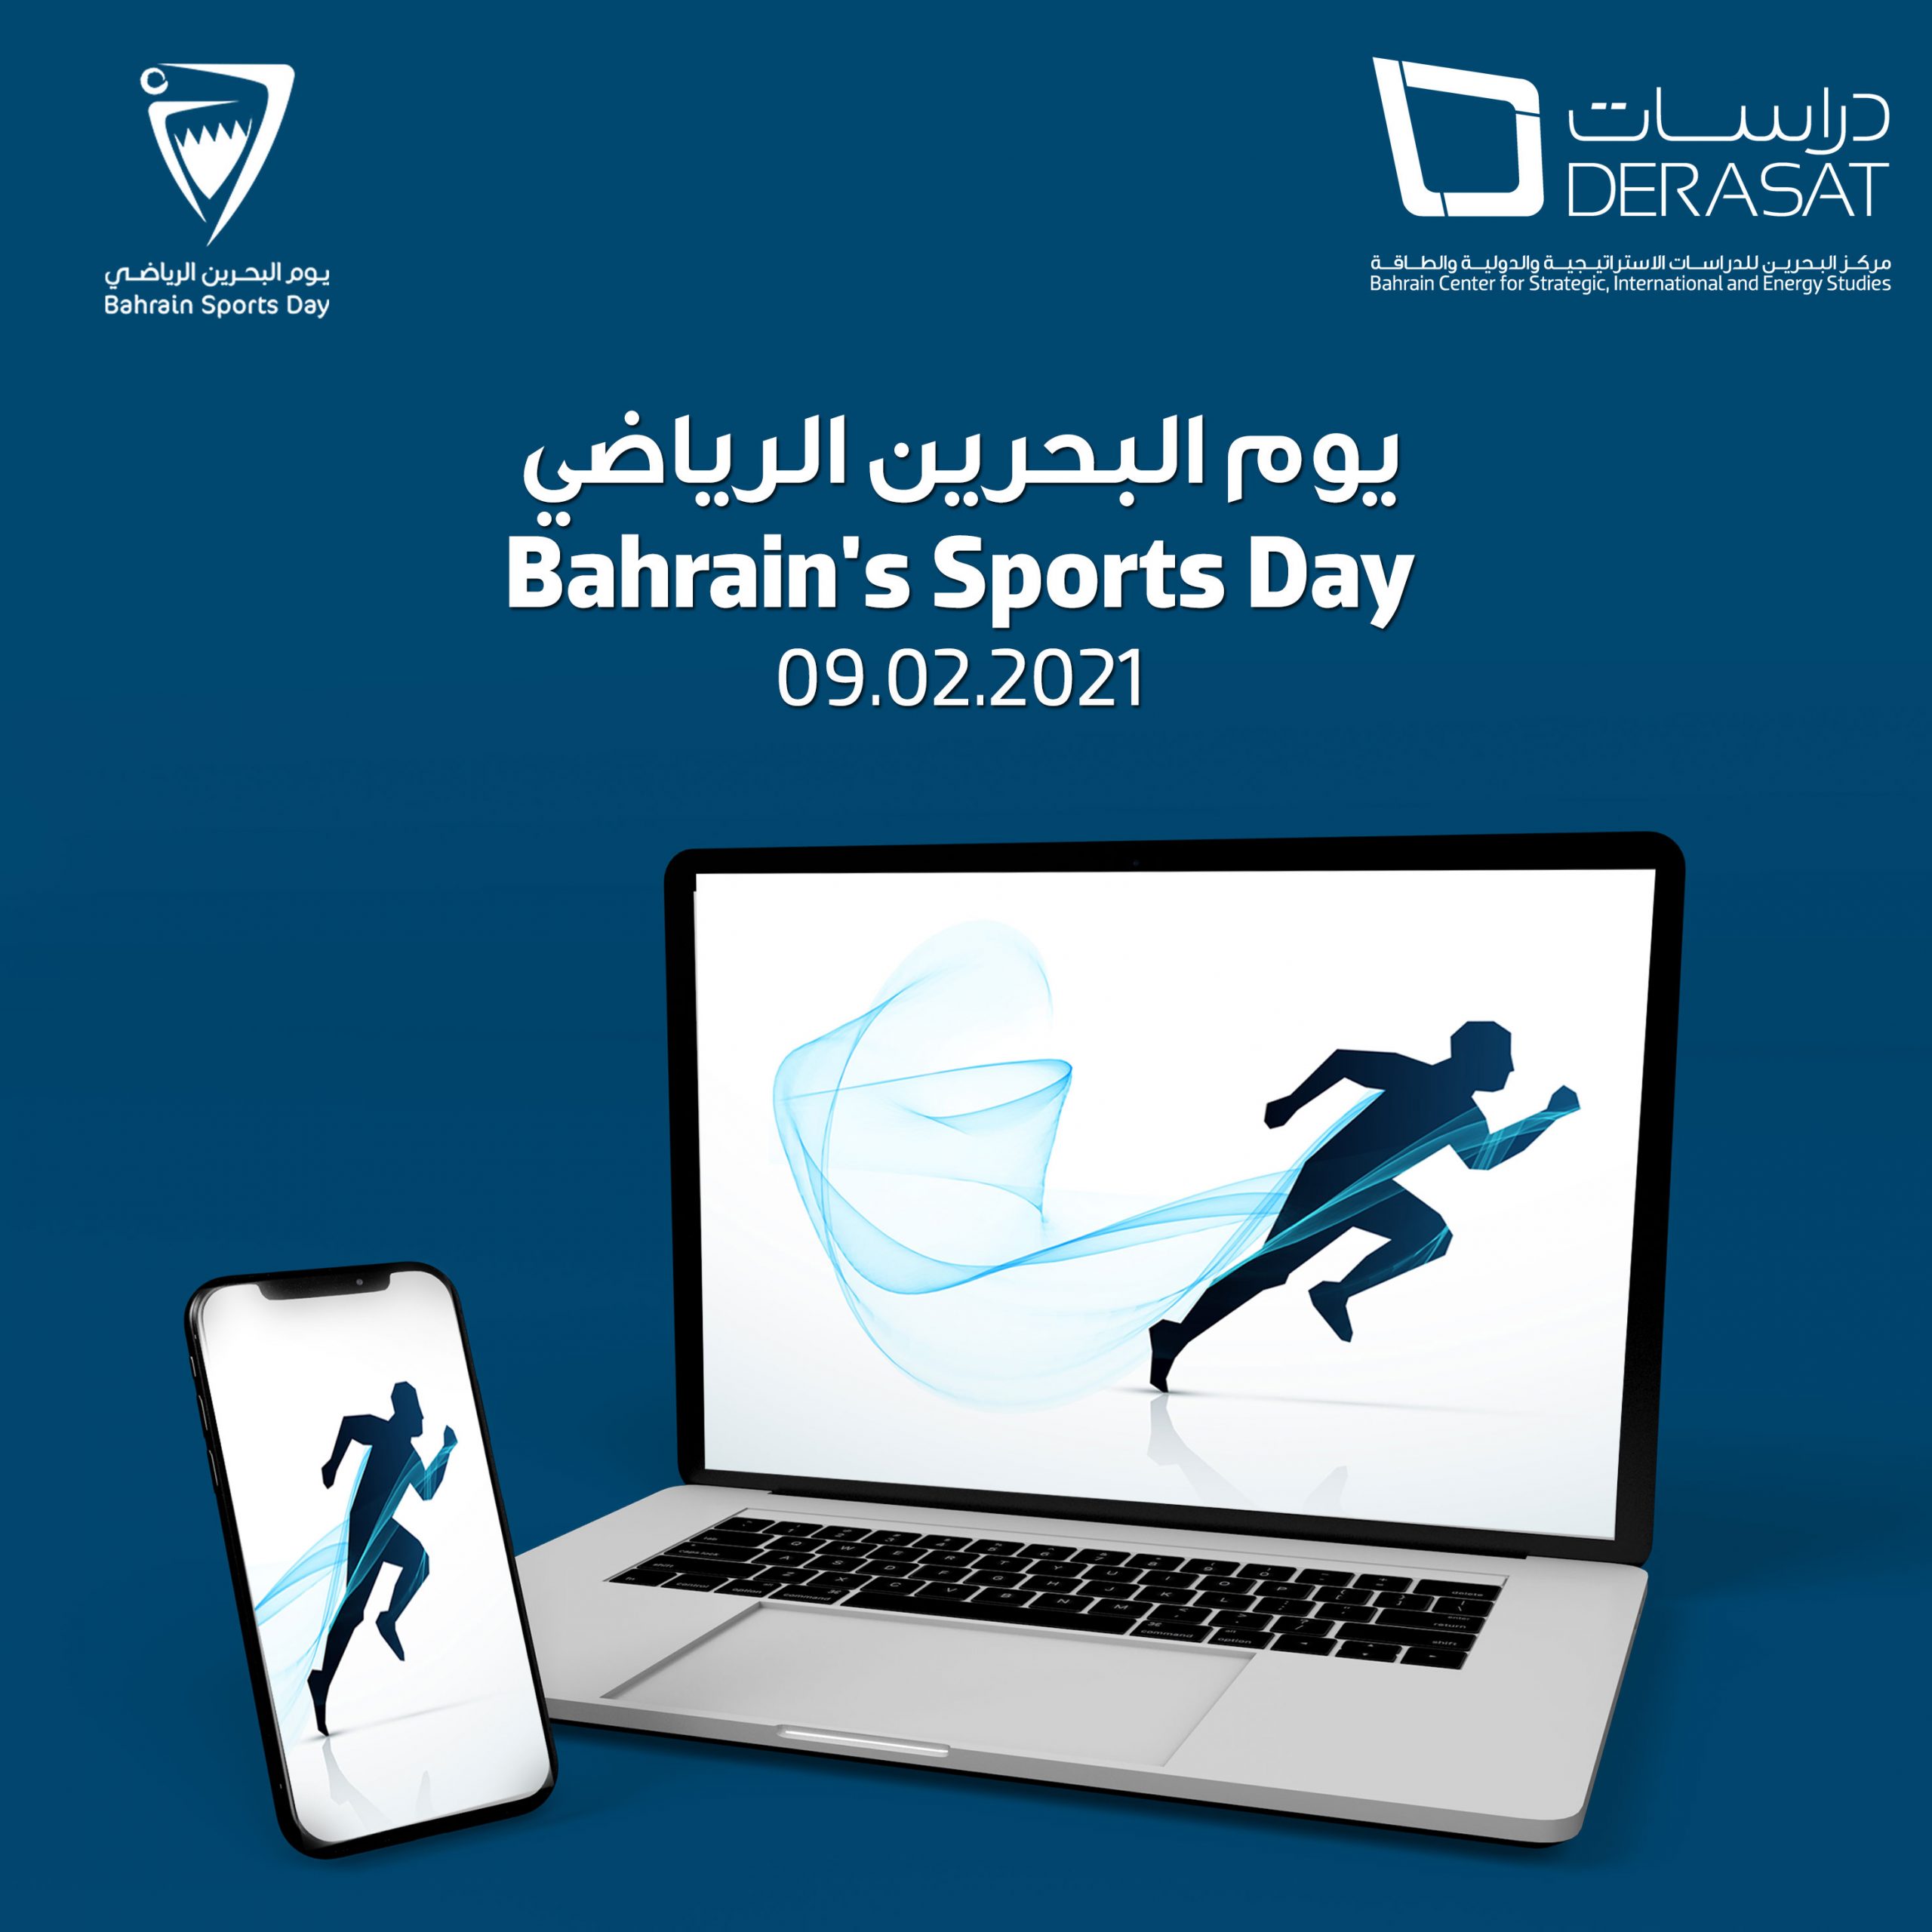 “دراسات” يحتفي باليوم الرياضي البحريني